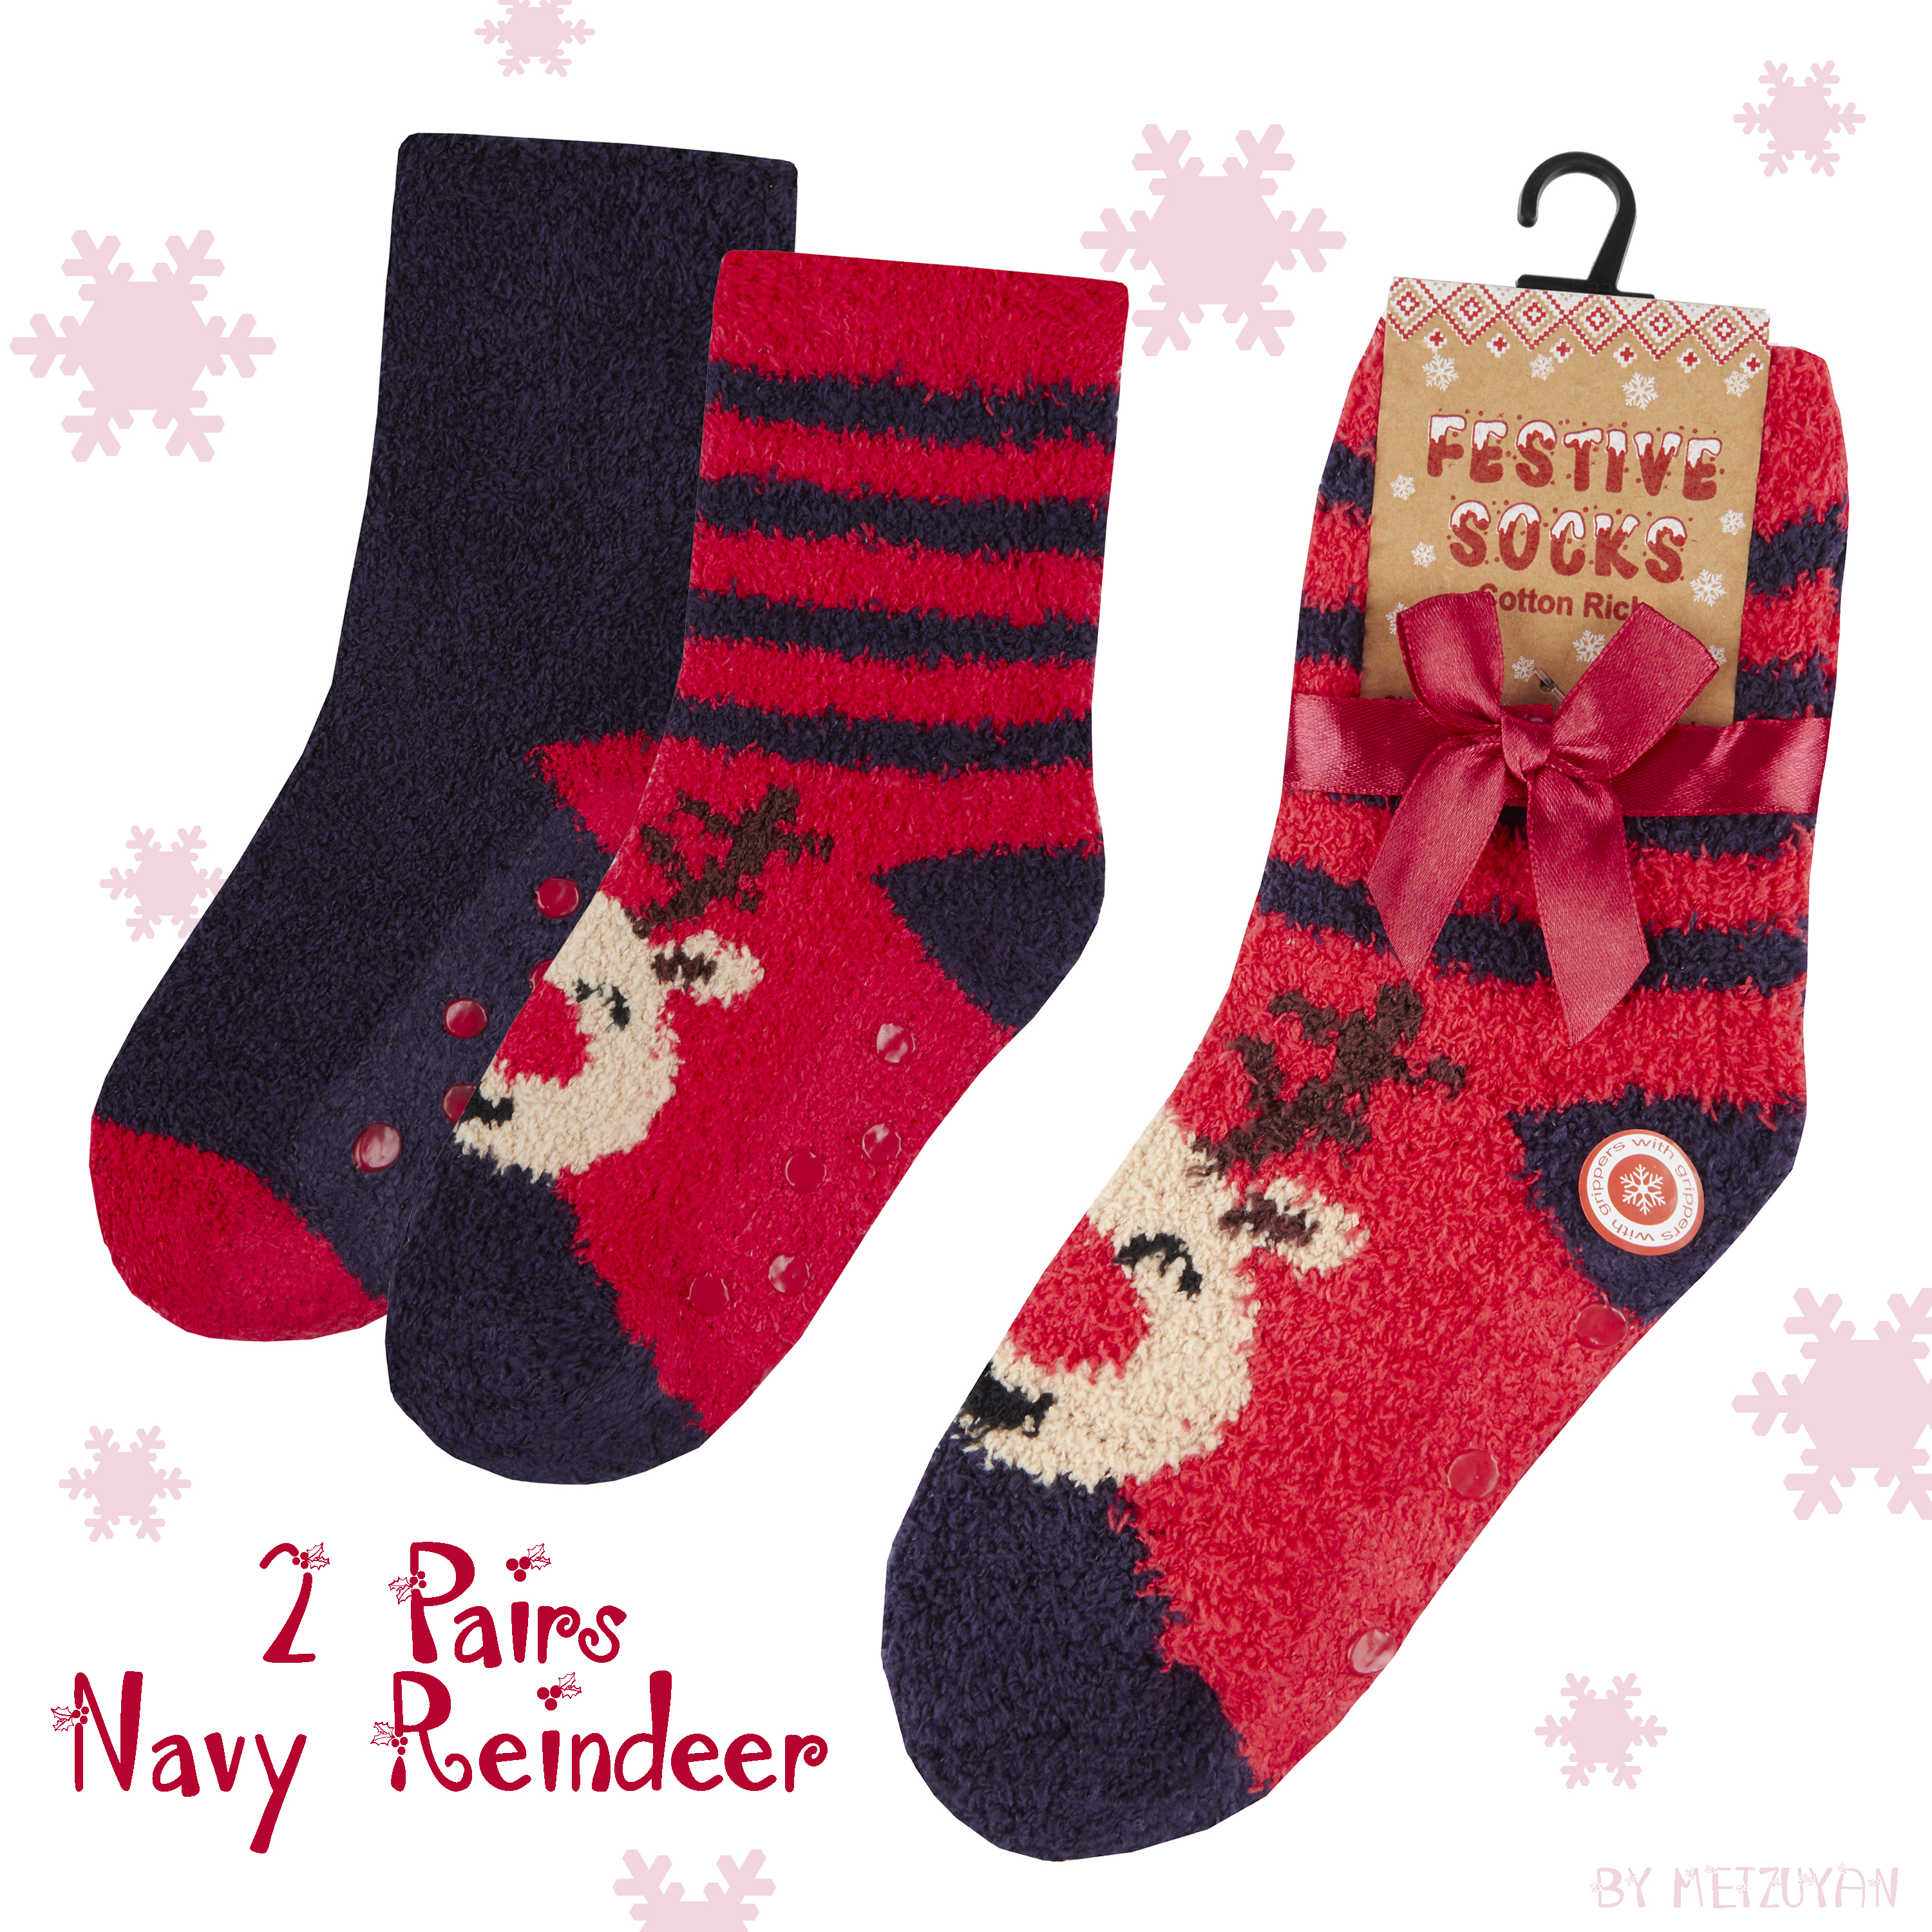 6Pairs Xmas Autumn Winter Thicken Home Slipper Socks for Boys Girls Women Kids Gift Christmas Socks 